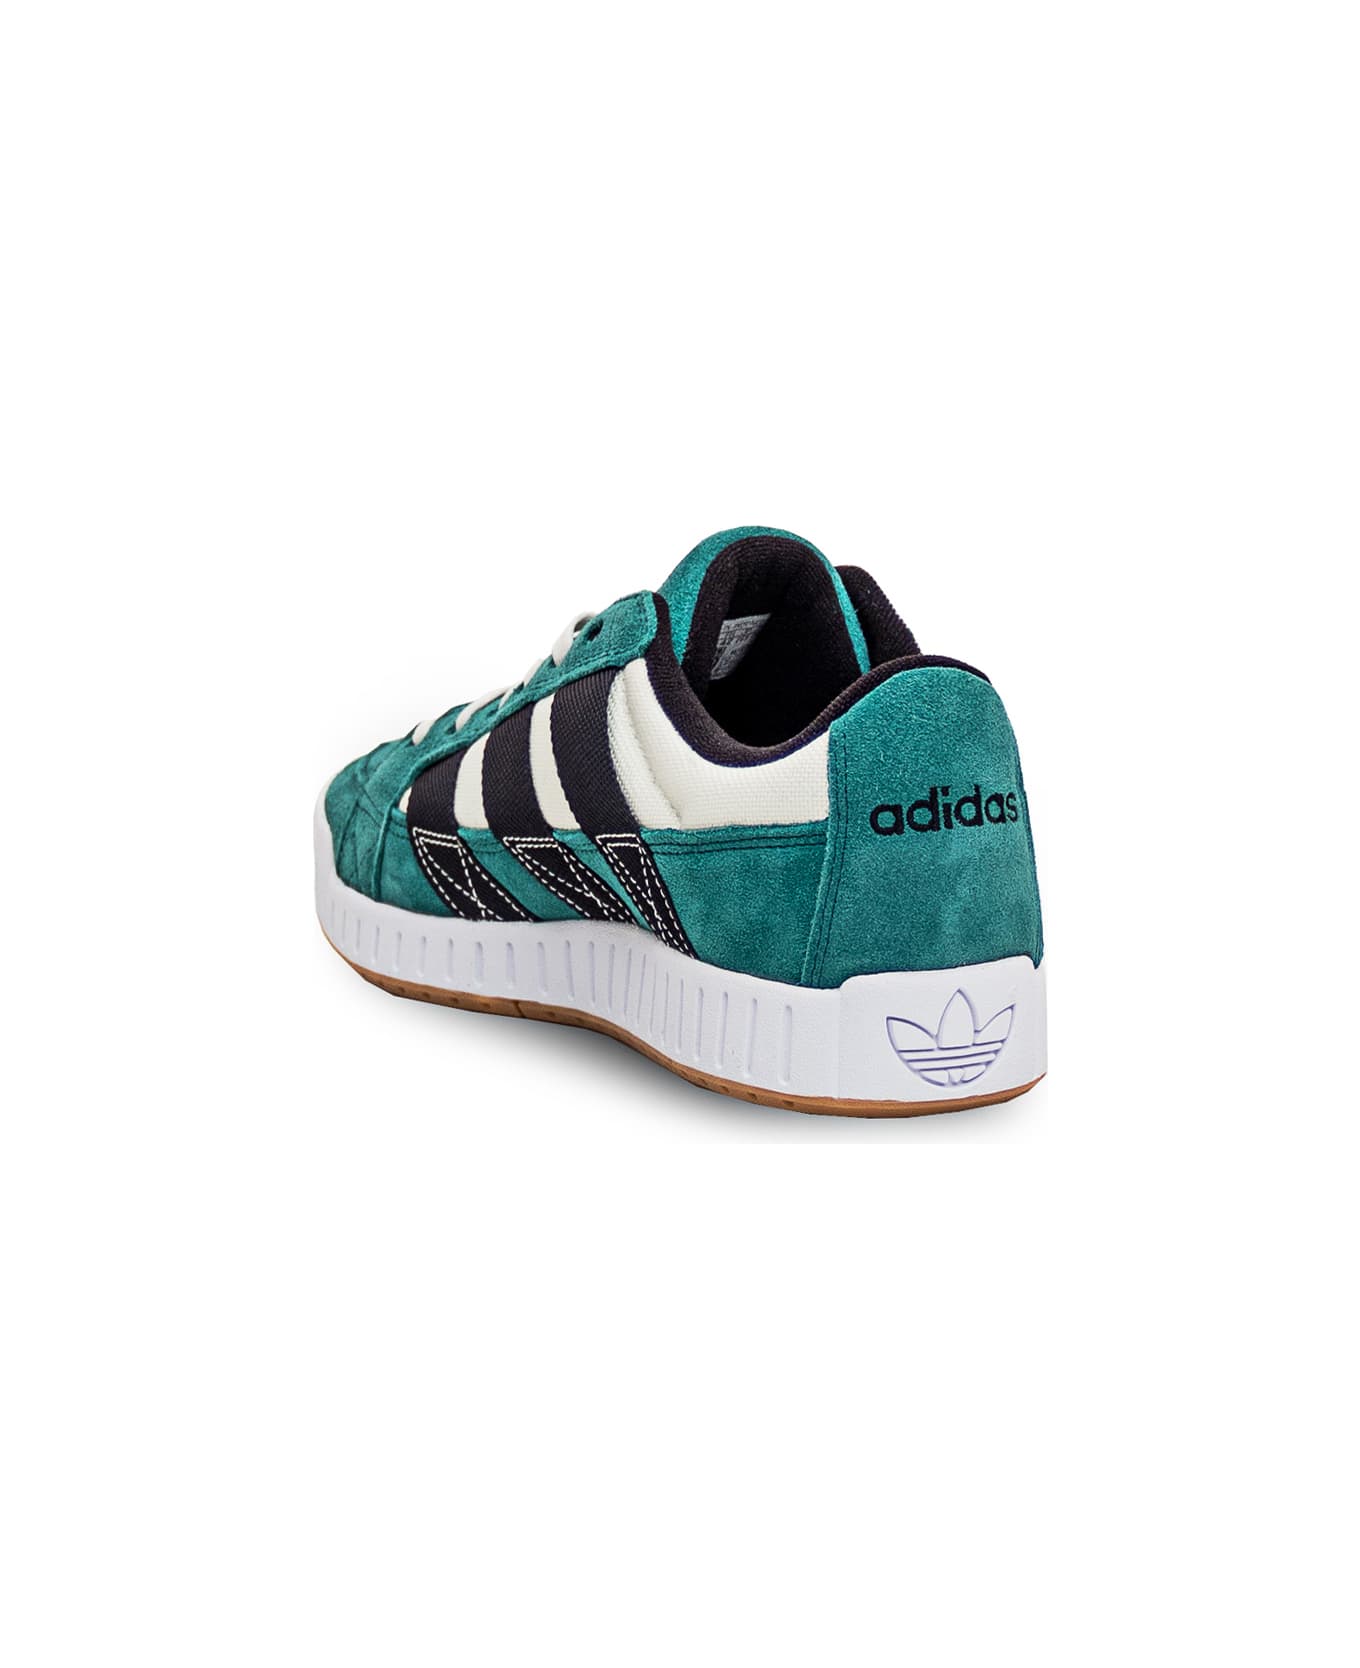 Adidas Originals Lwst Sneaker - CGREEN/CBLACK/OWHITE